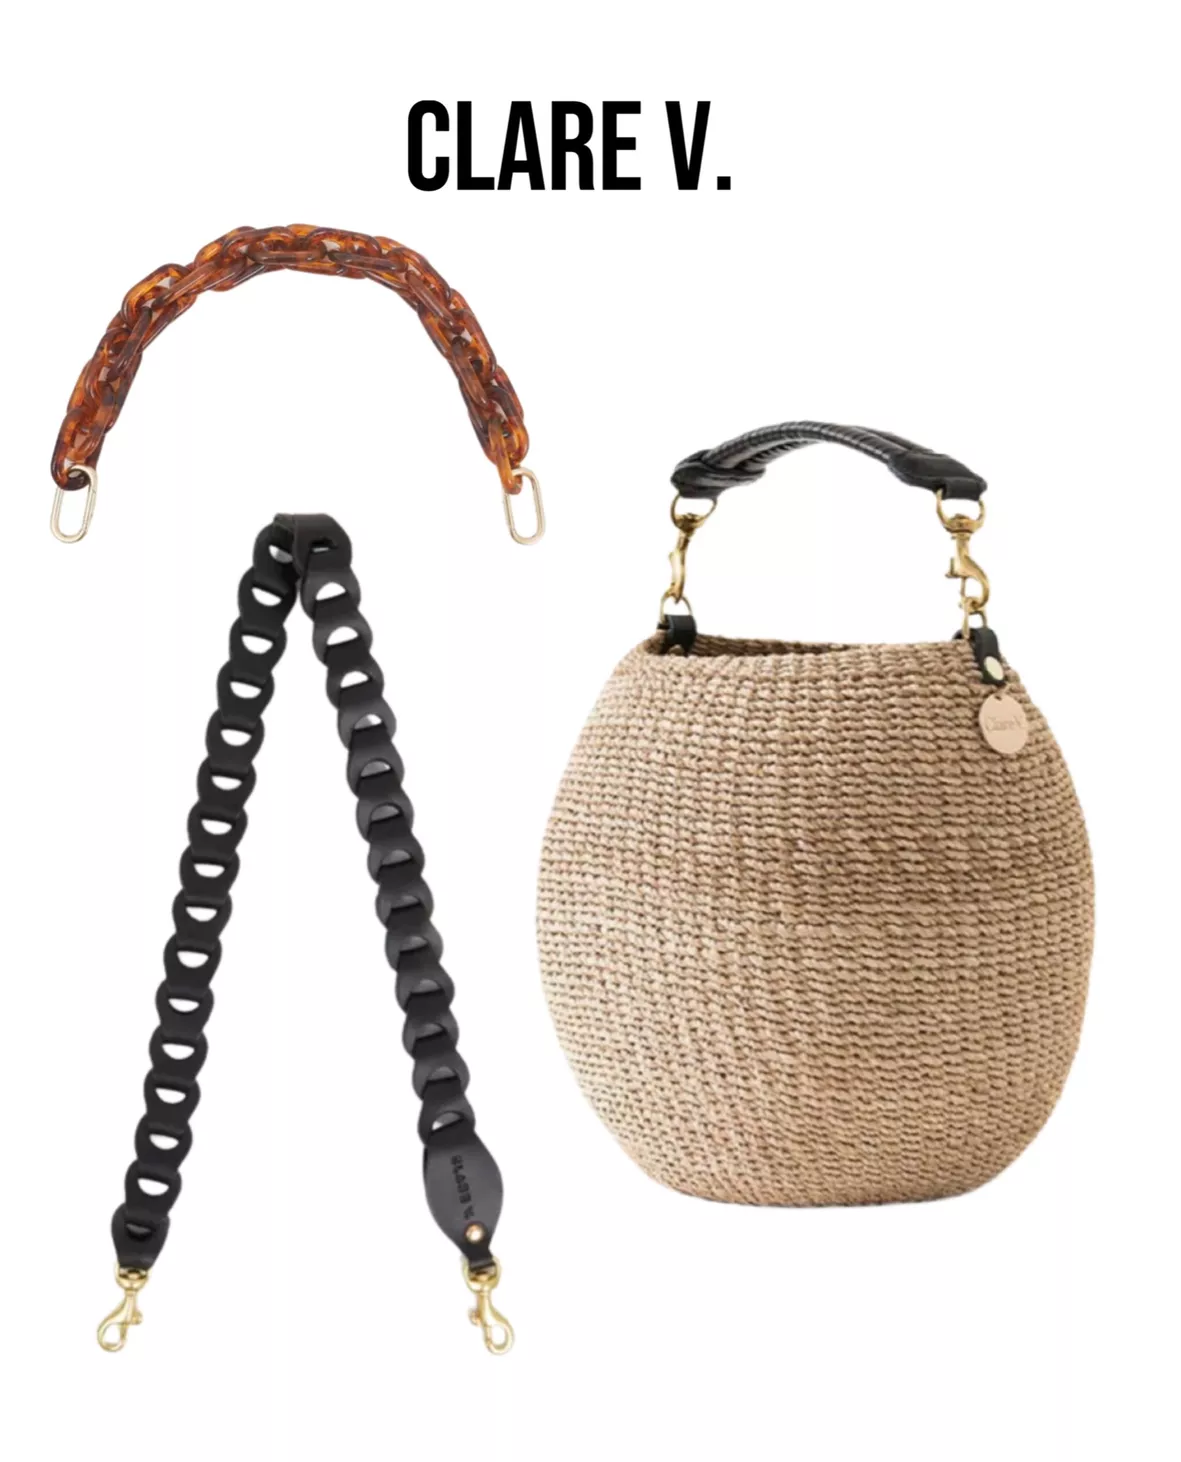 Clare V. Pot de Miel Basket Bag curated on LTK